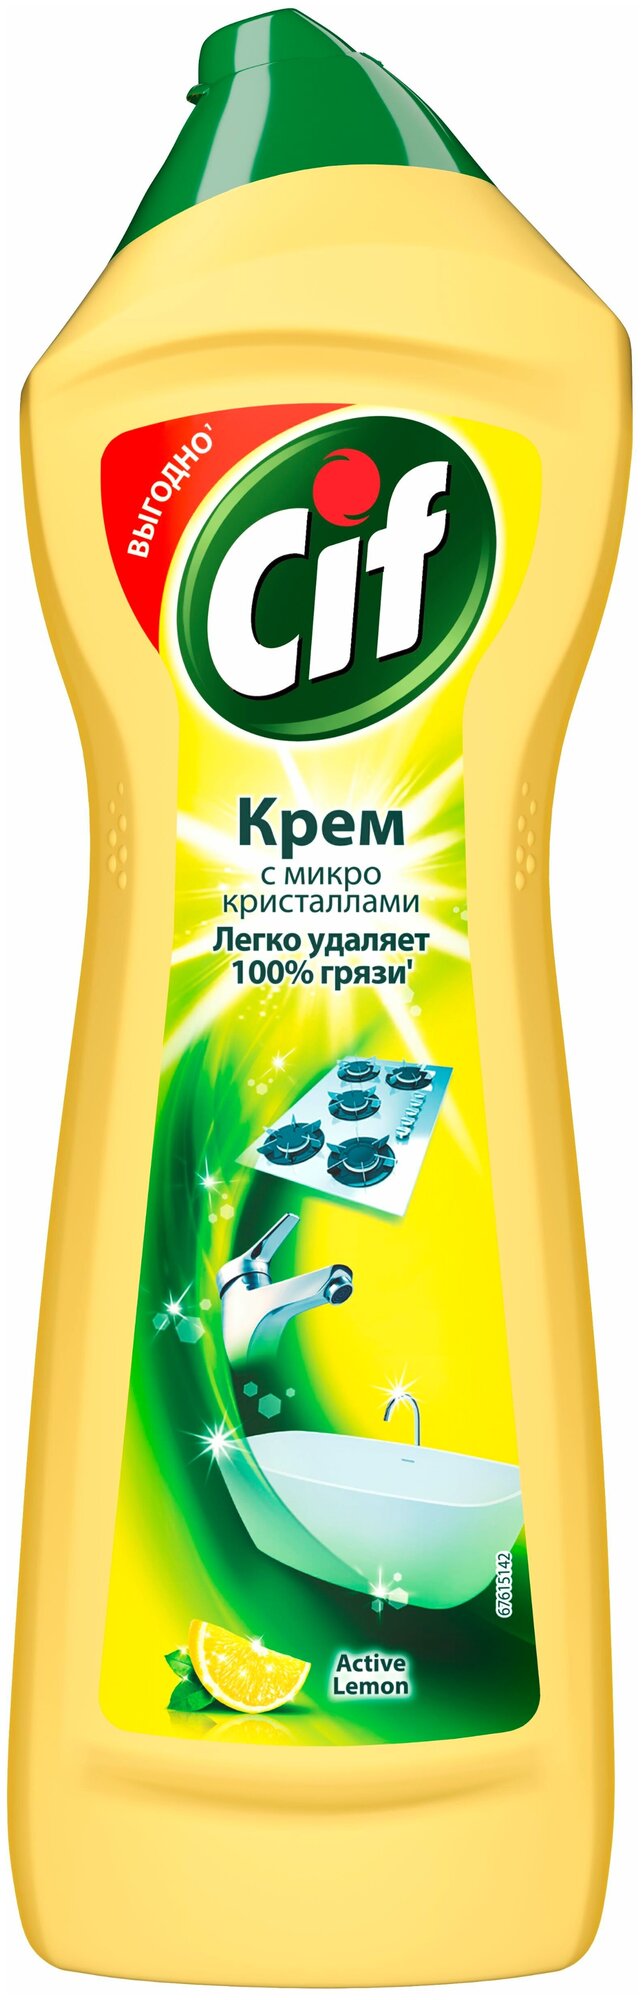 Крем Active Lemon Cif